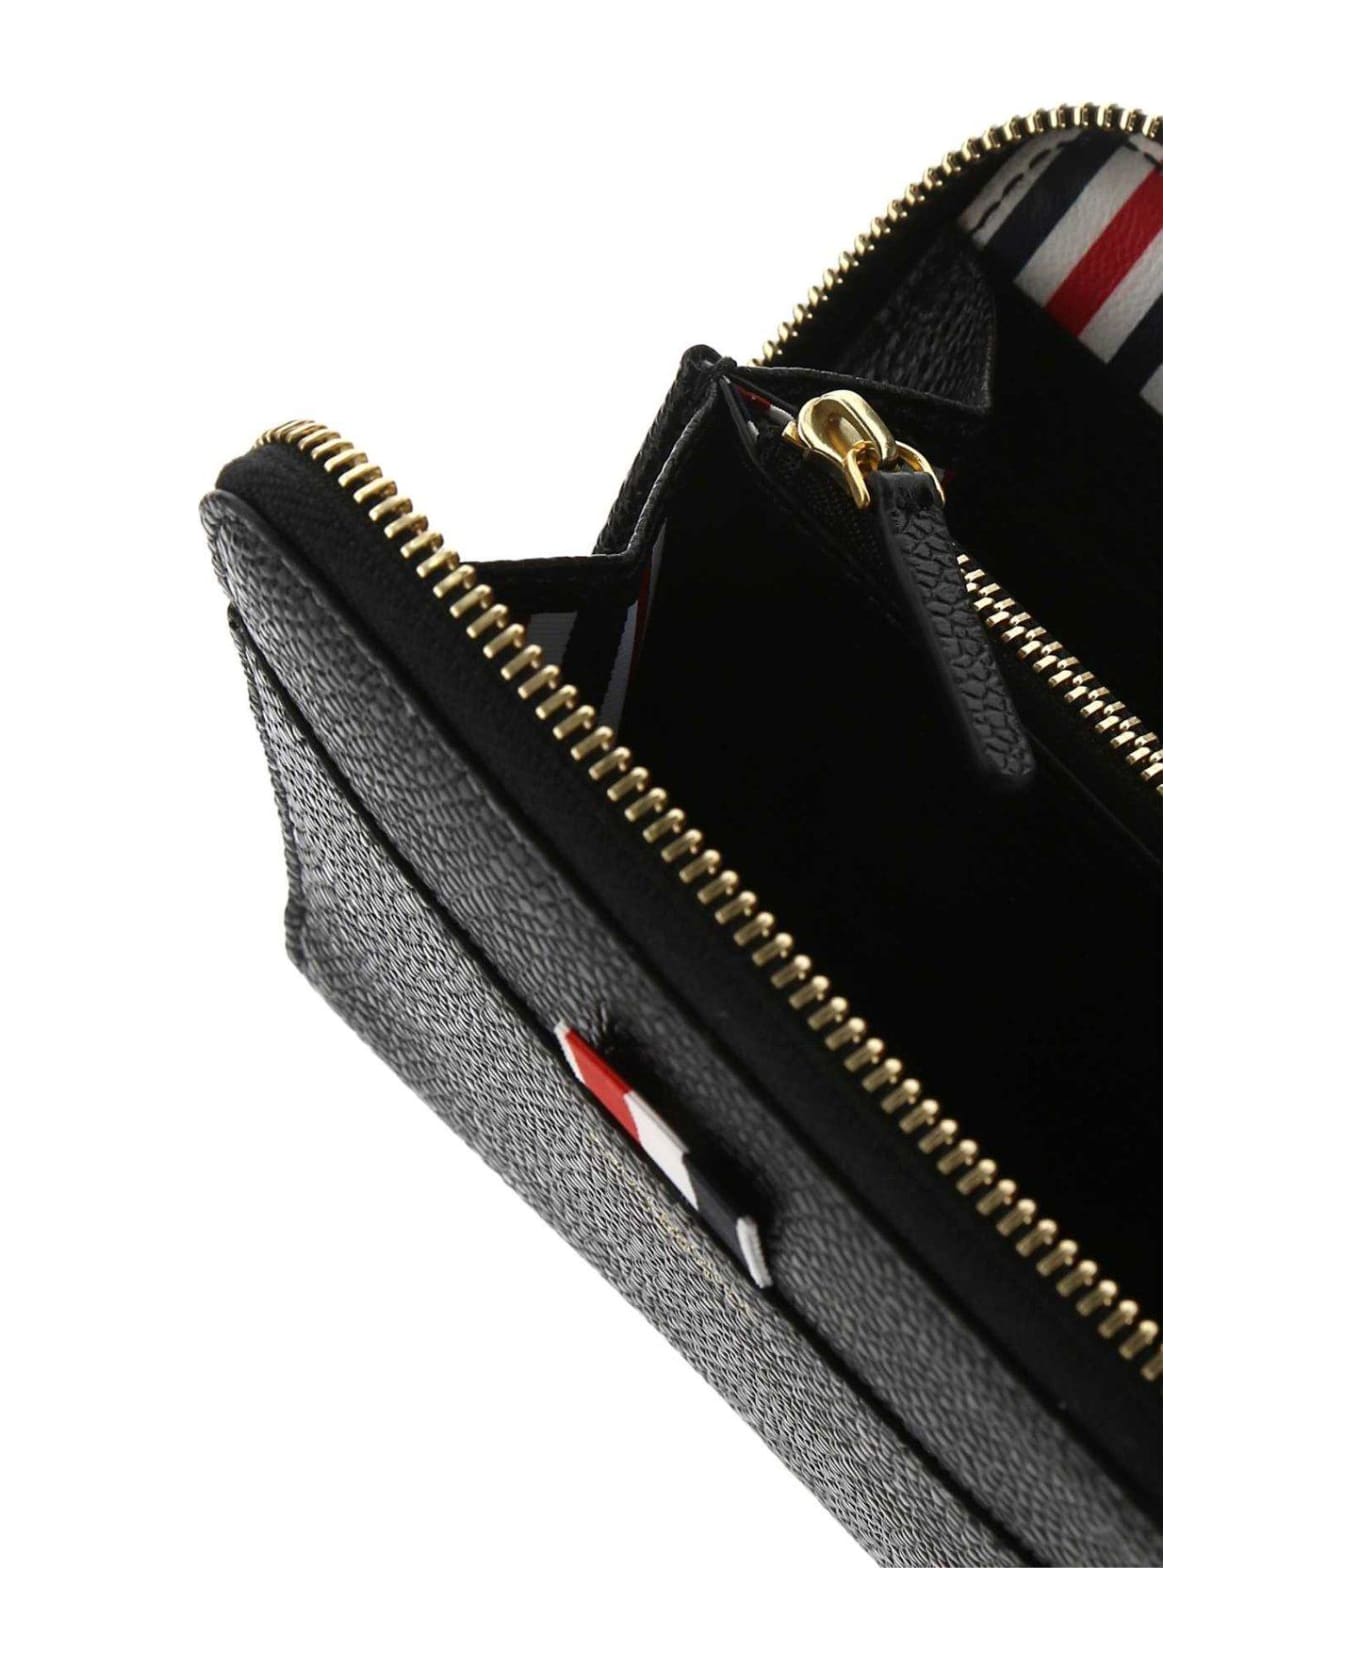 Thom Browne Logo Embossed Zipped Wallet - BLACK 財布